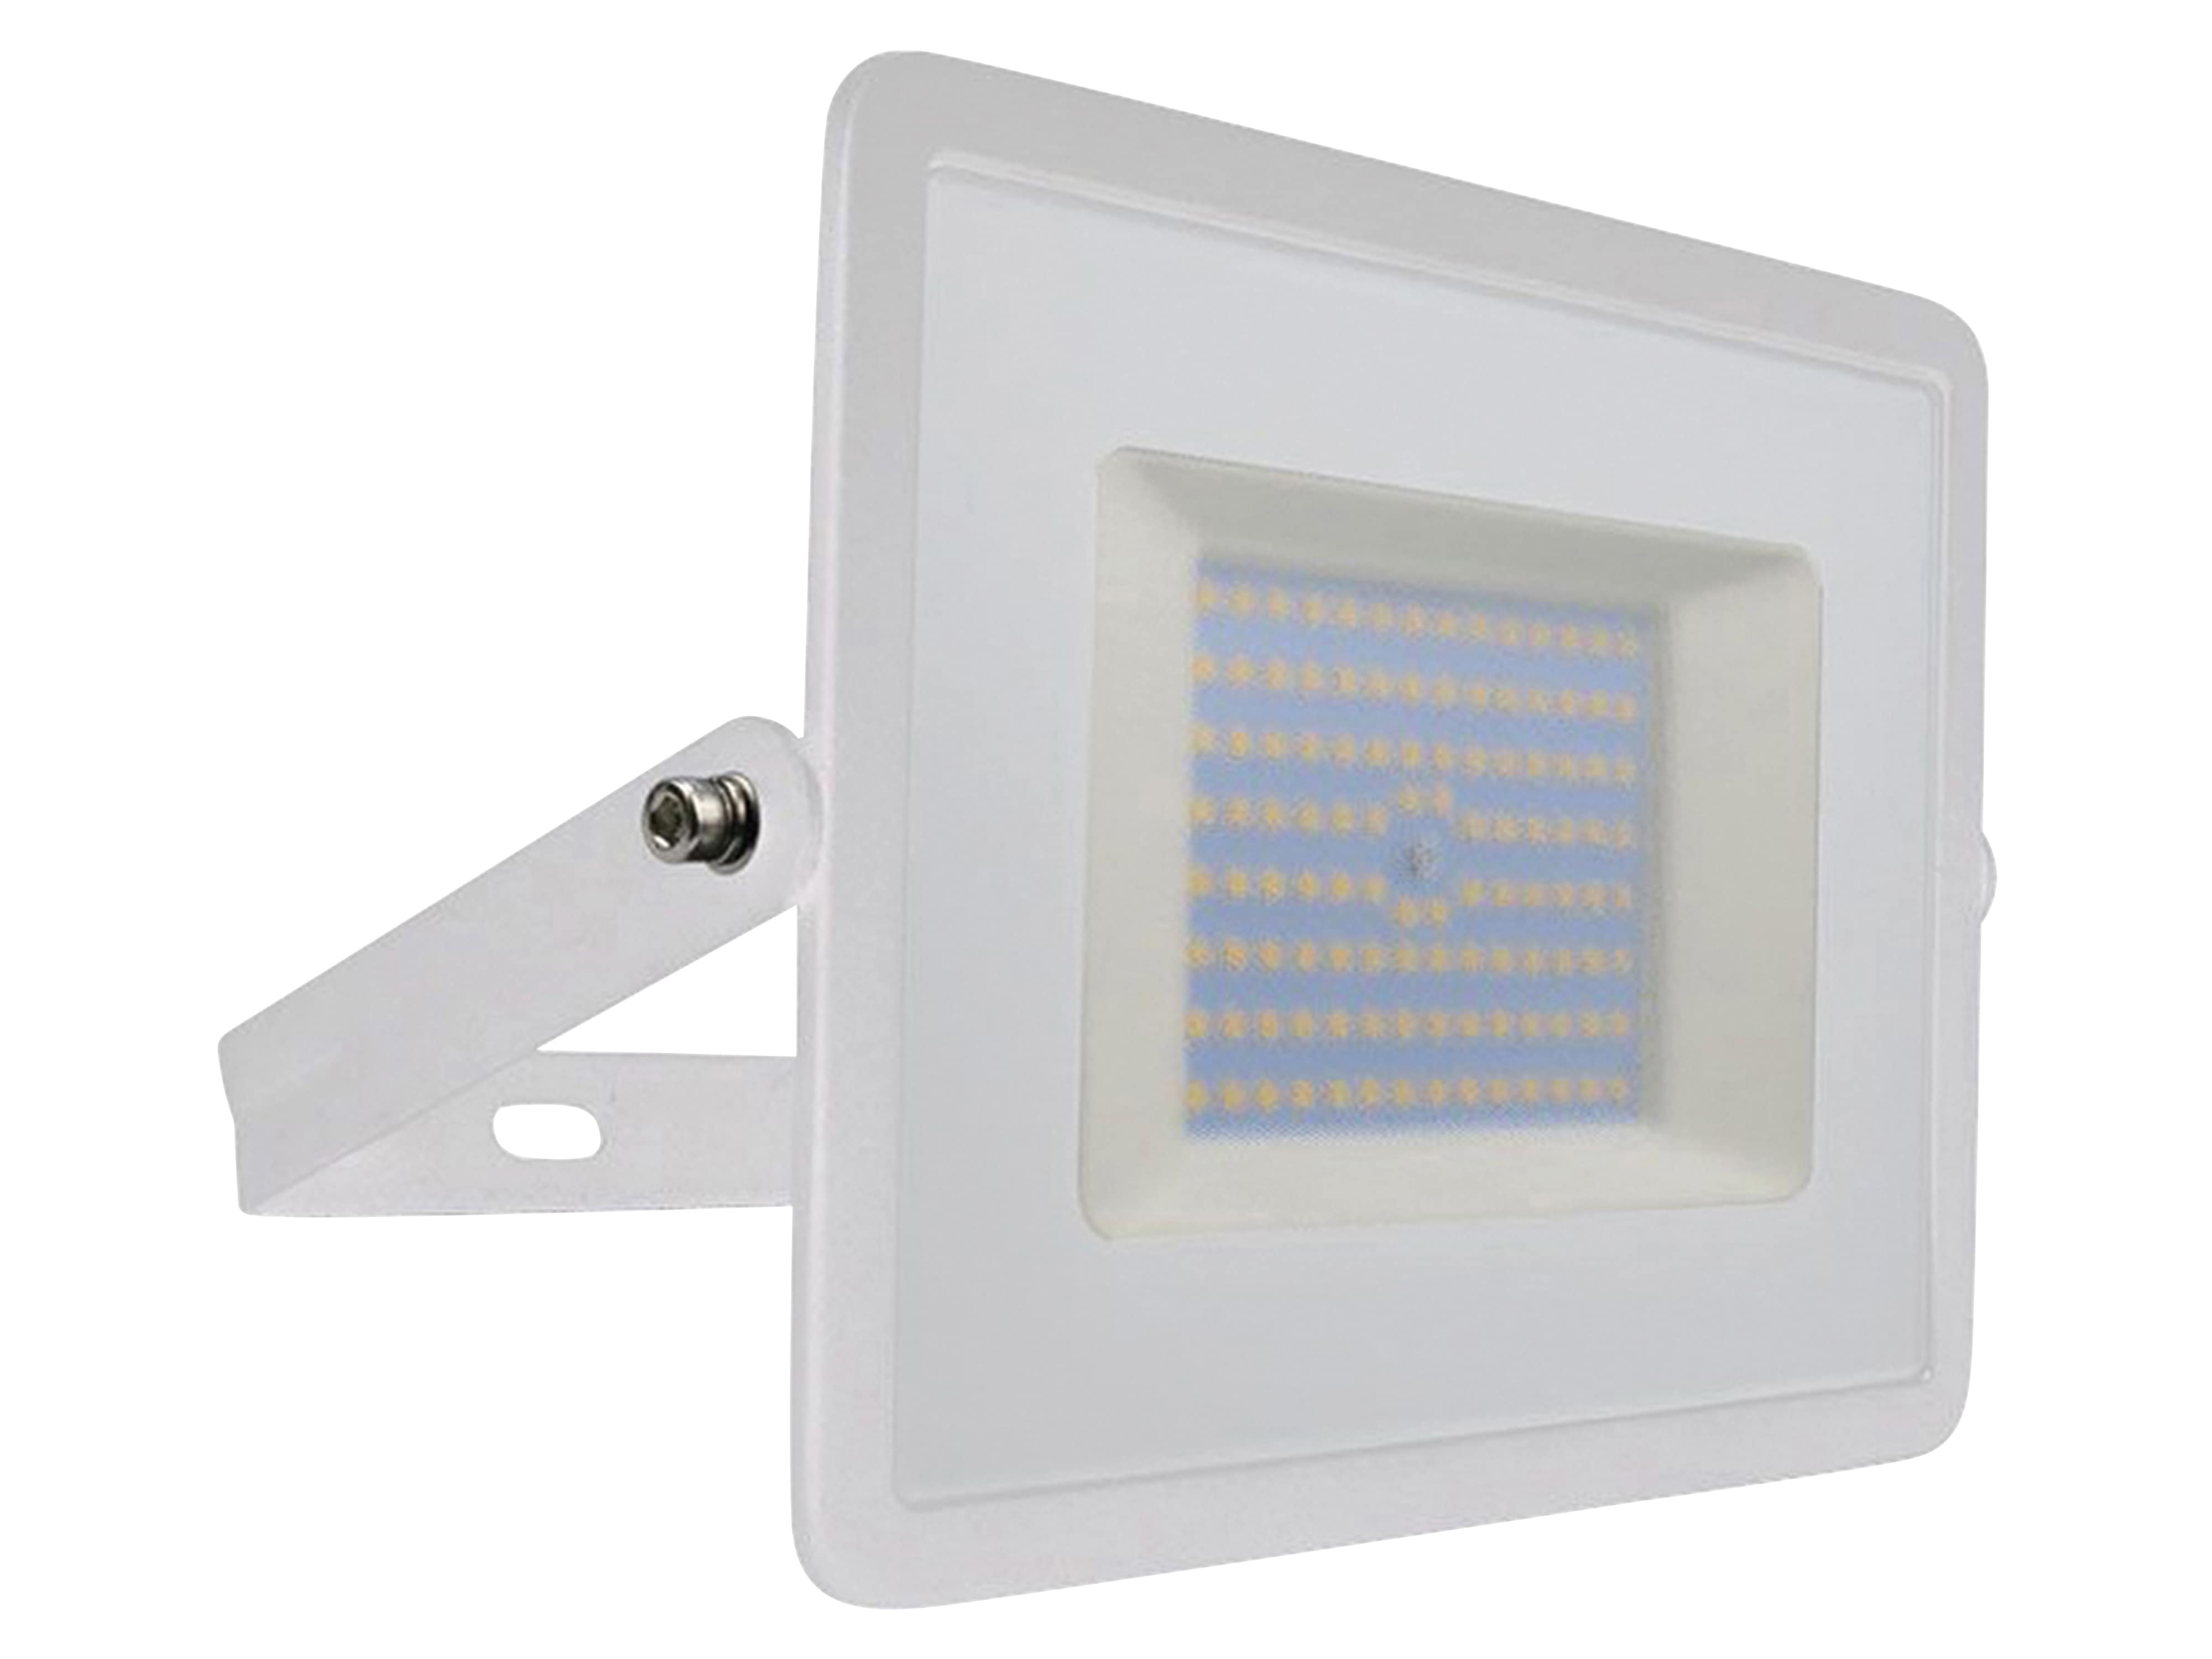 V-TAC LED-Fluter VT-40101, EEK: F, 100W, 8700lm, 6500K, weiß